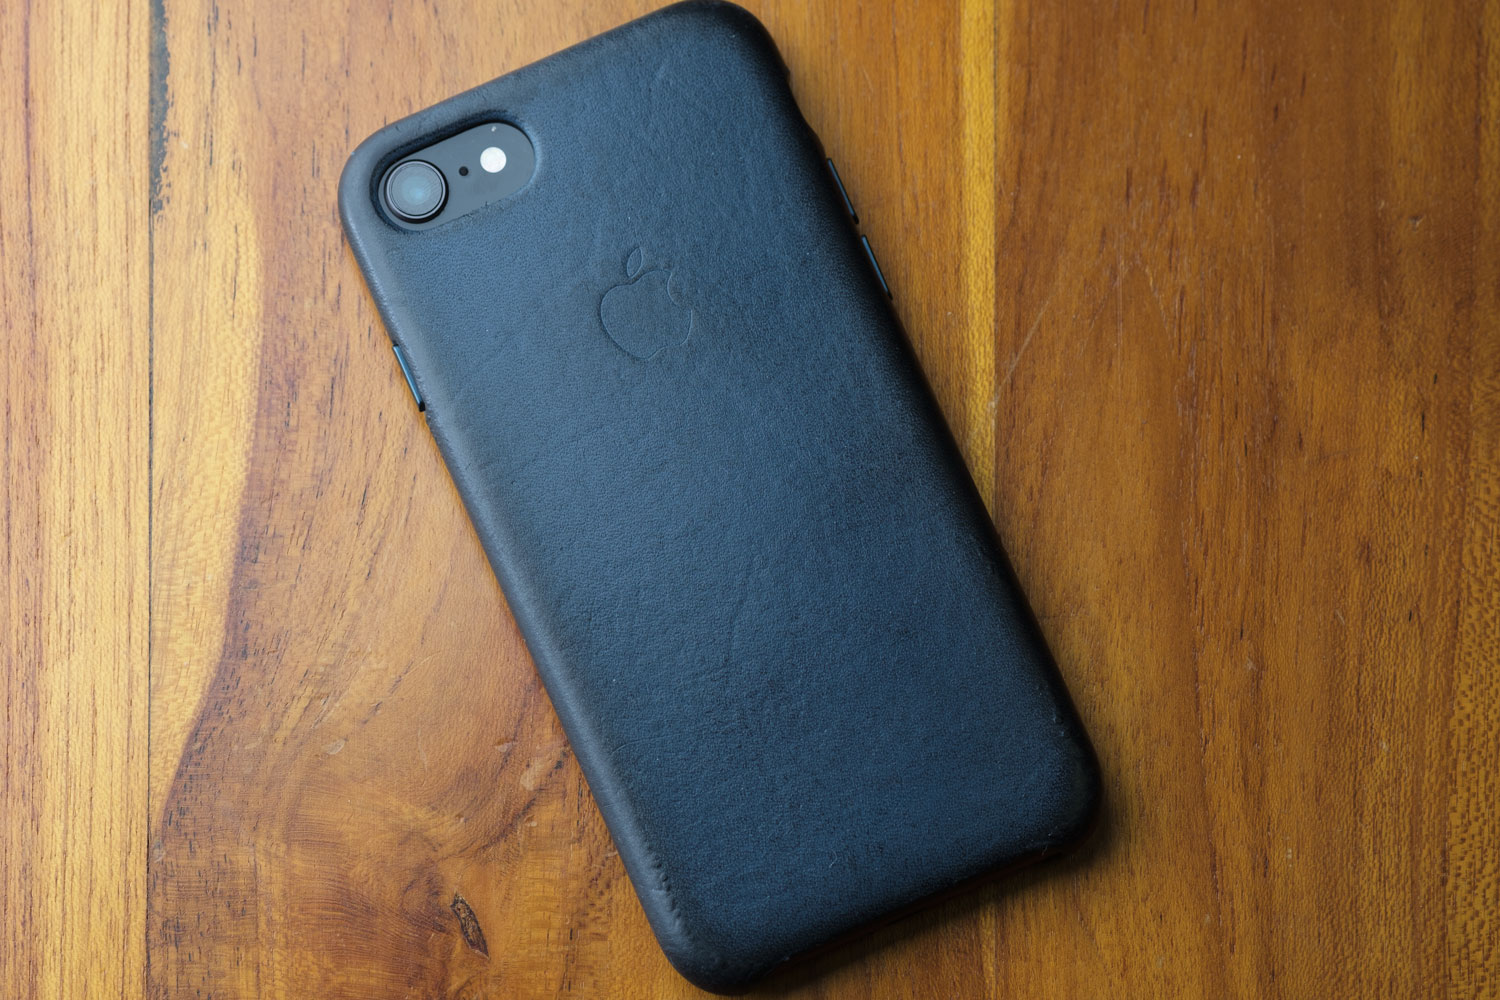 純正の高クオリティ Iphone 8のレザーケース 色はコスモスブルーをレビュー Cola Blog コーラブログ